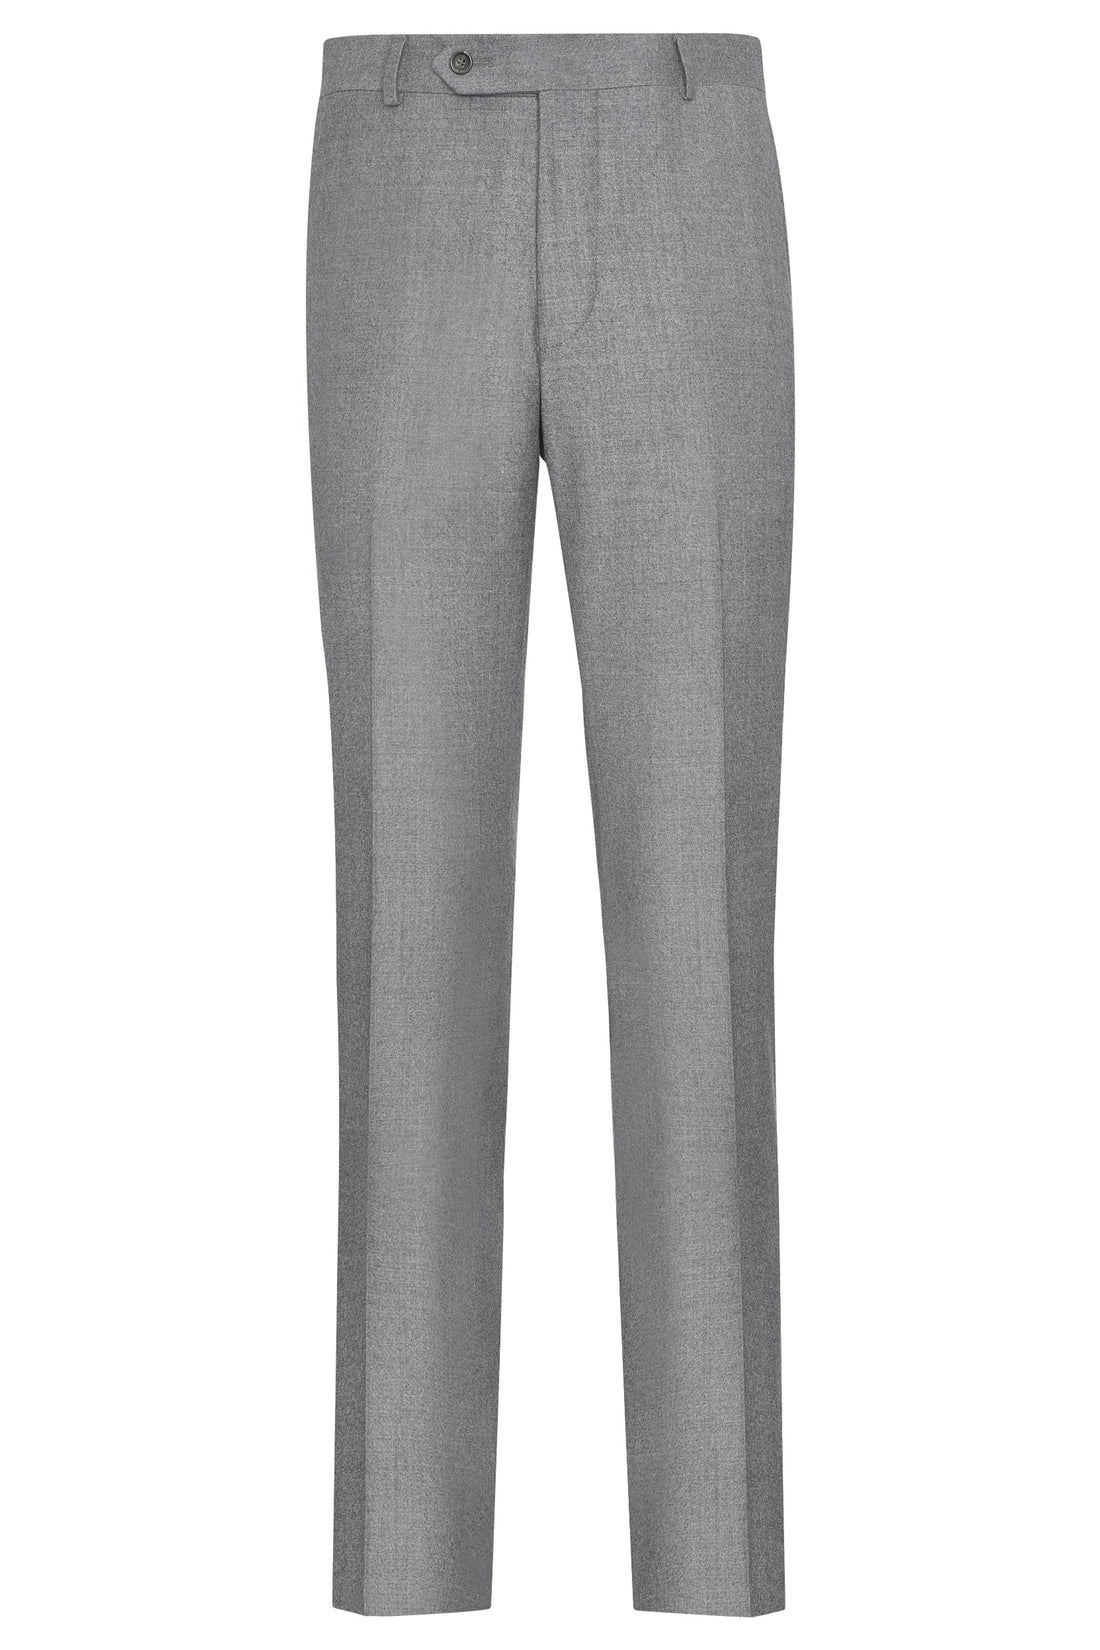 Pantalon gris clair sans plis en flanelle de laine froide